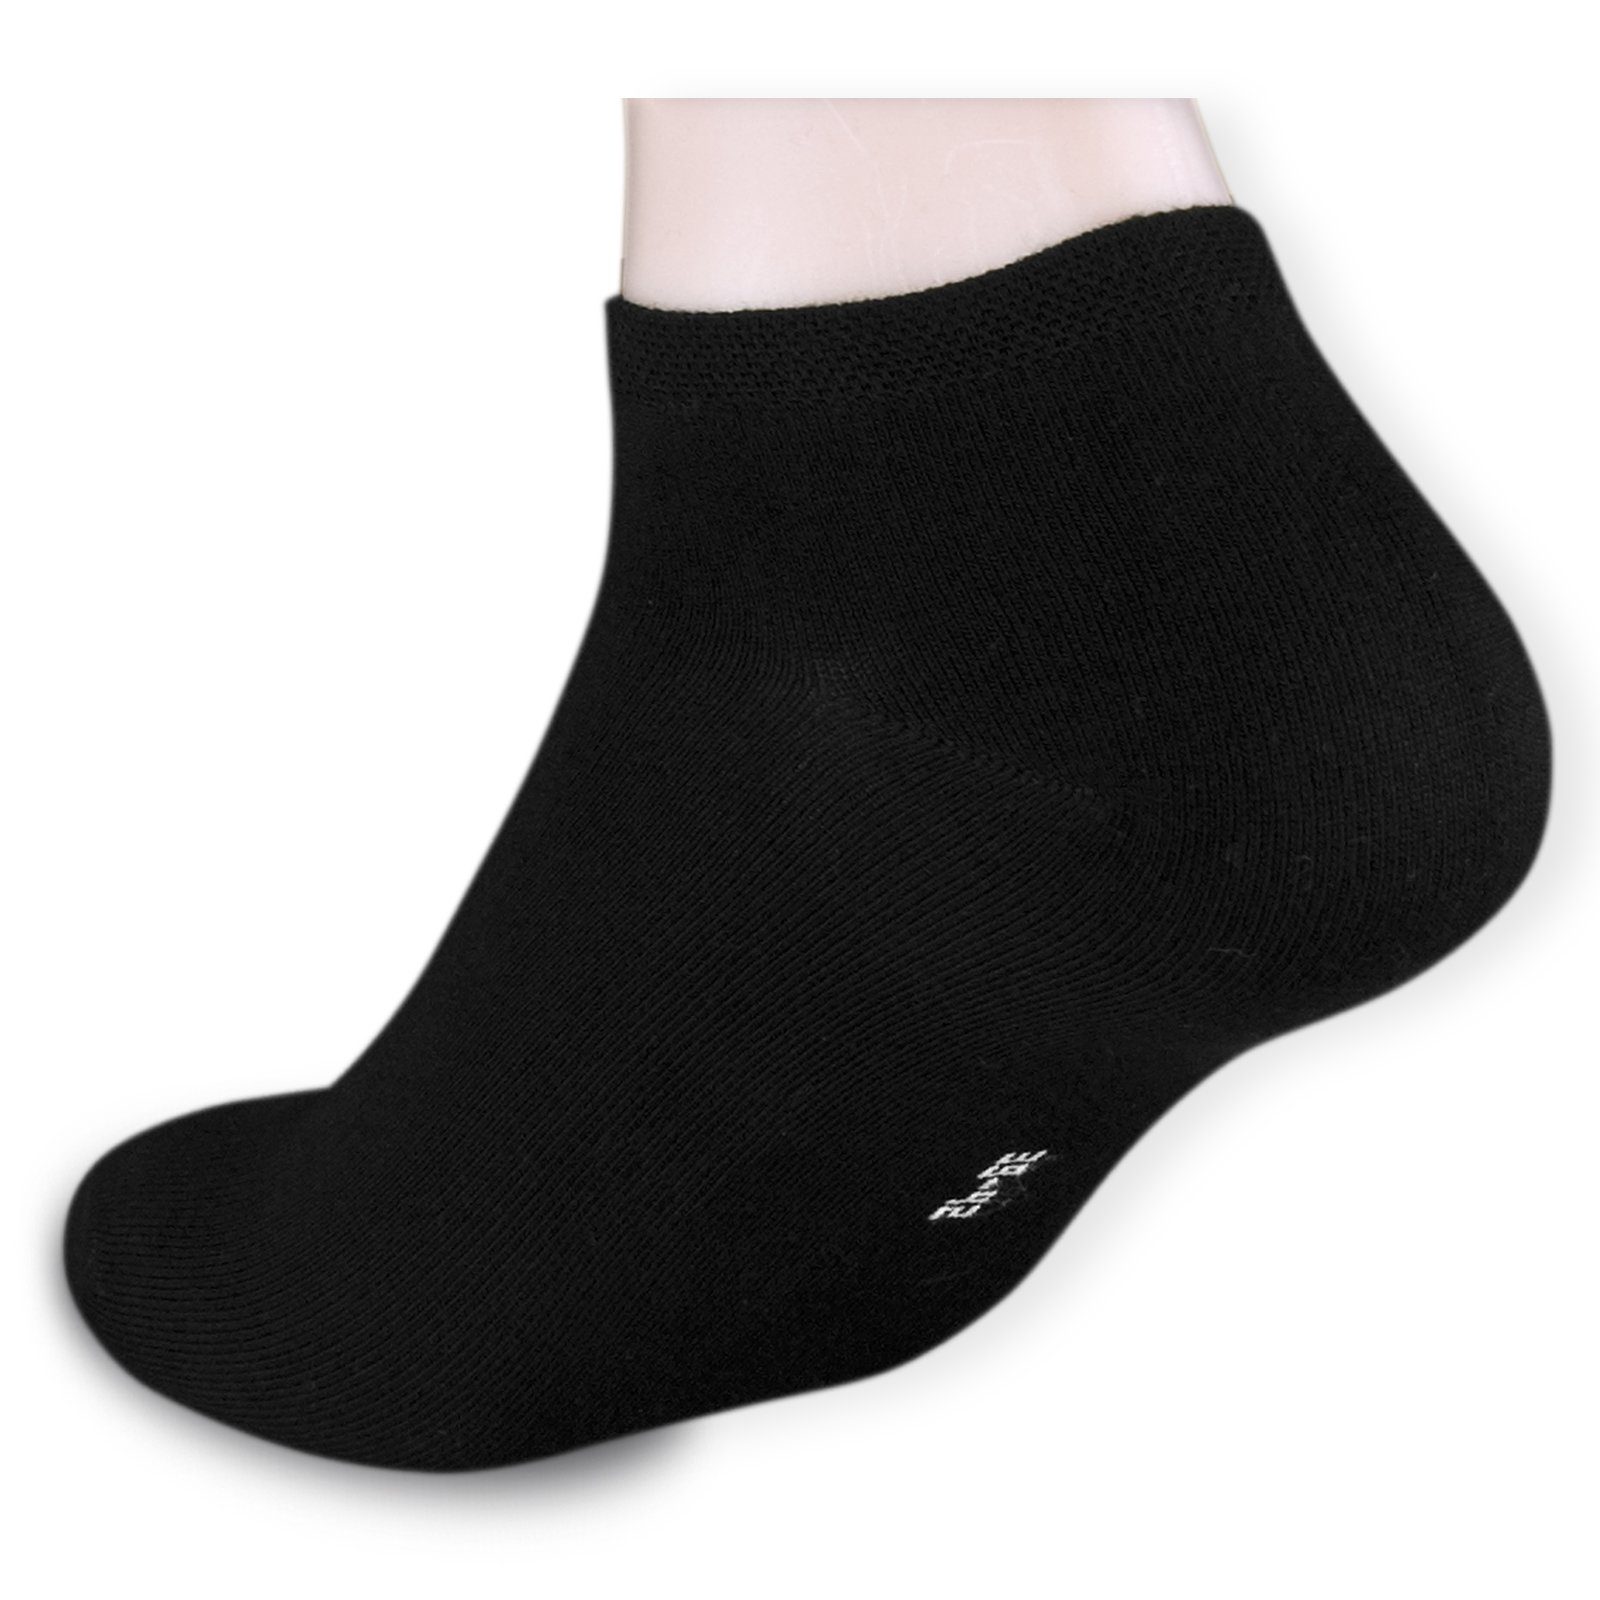 Die Sockenbude Sneakersocken BLACK (Bund, Naht schwarz) 4-Paar, ohne drückende